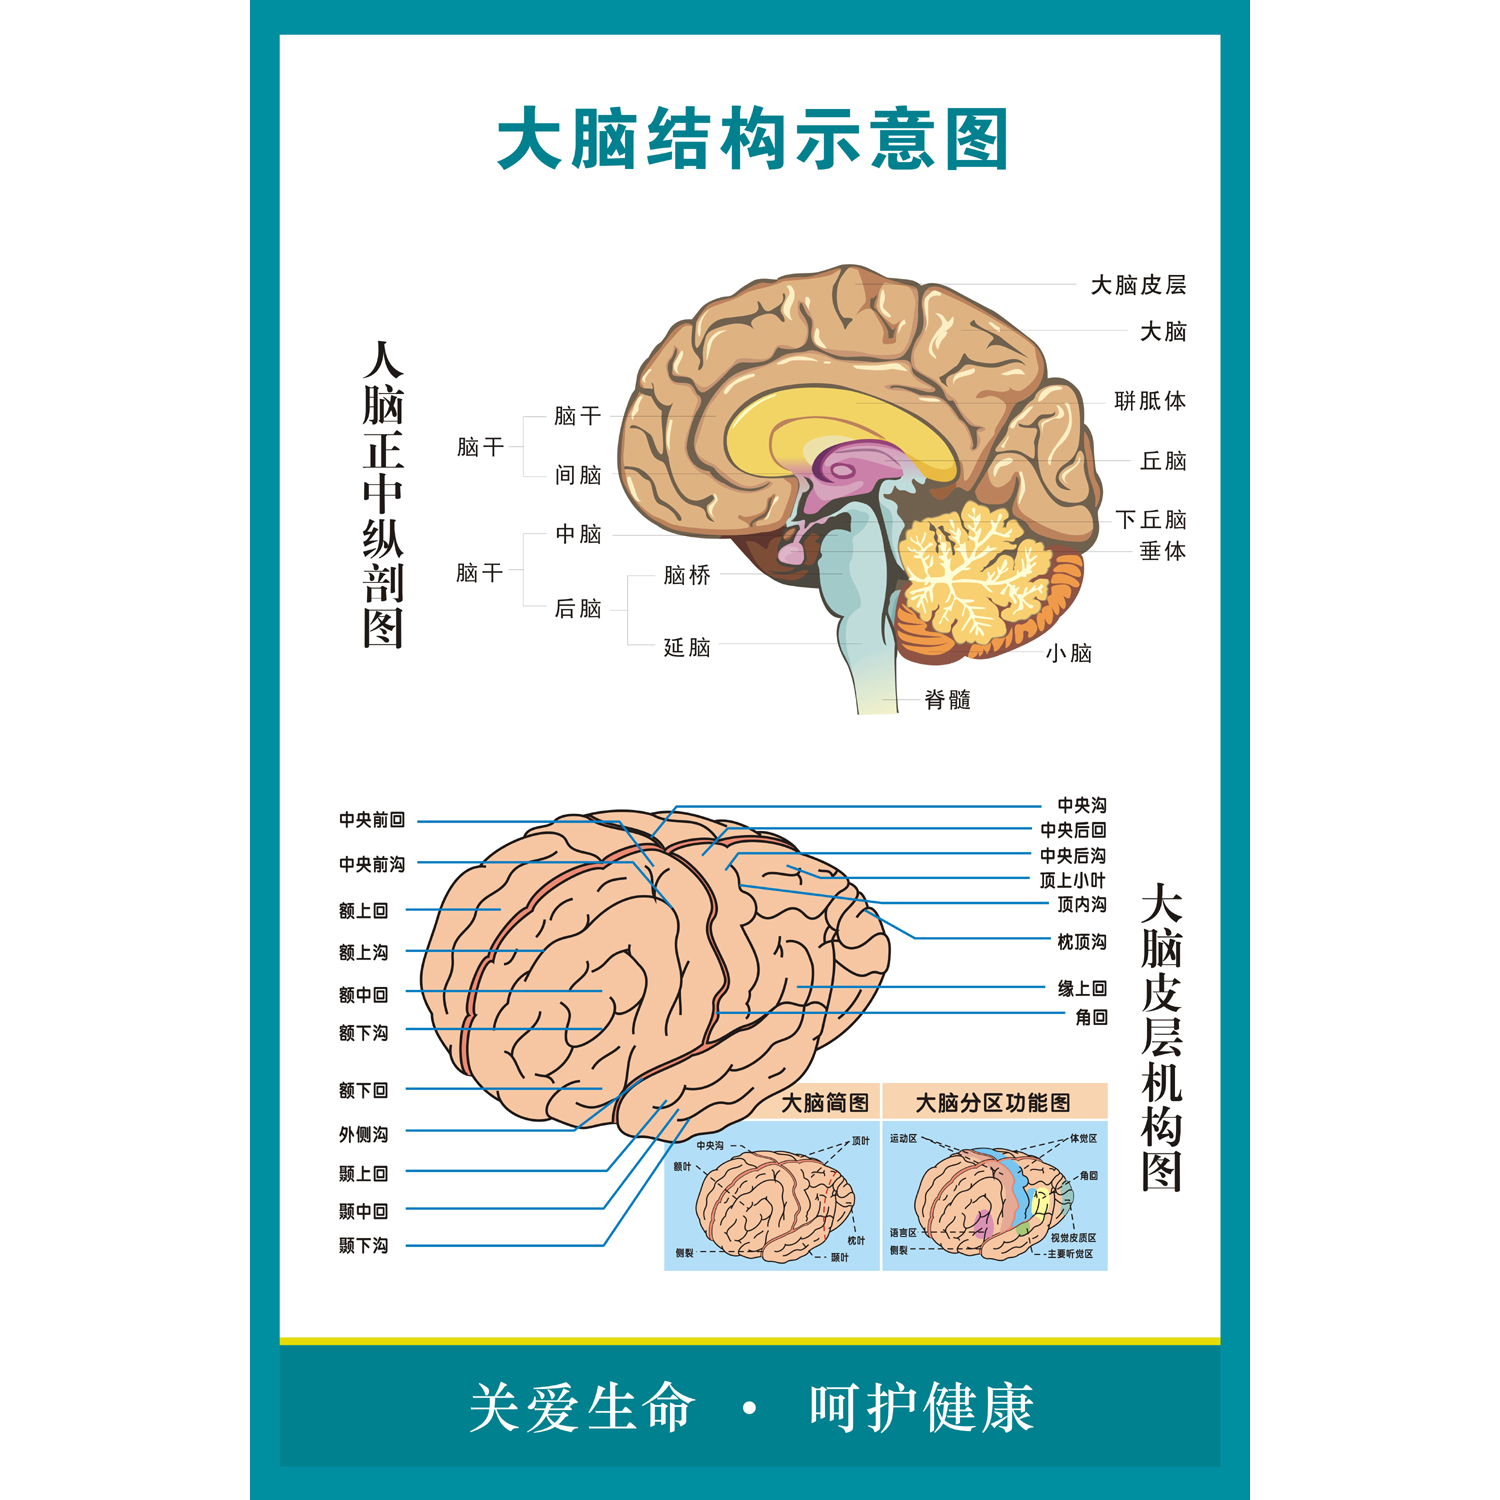 大脑解剖图 人体脑部神经结构大挂图 人体器官解剖图示意图海报